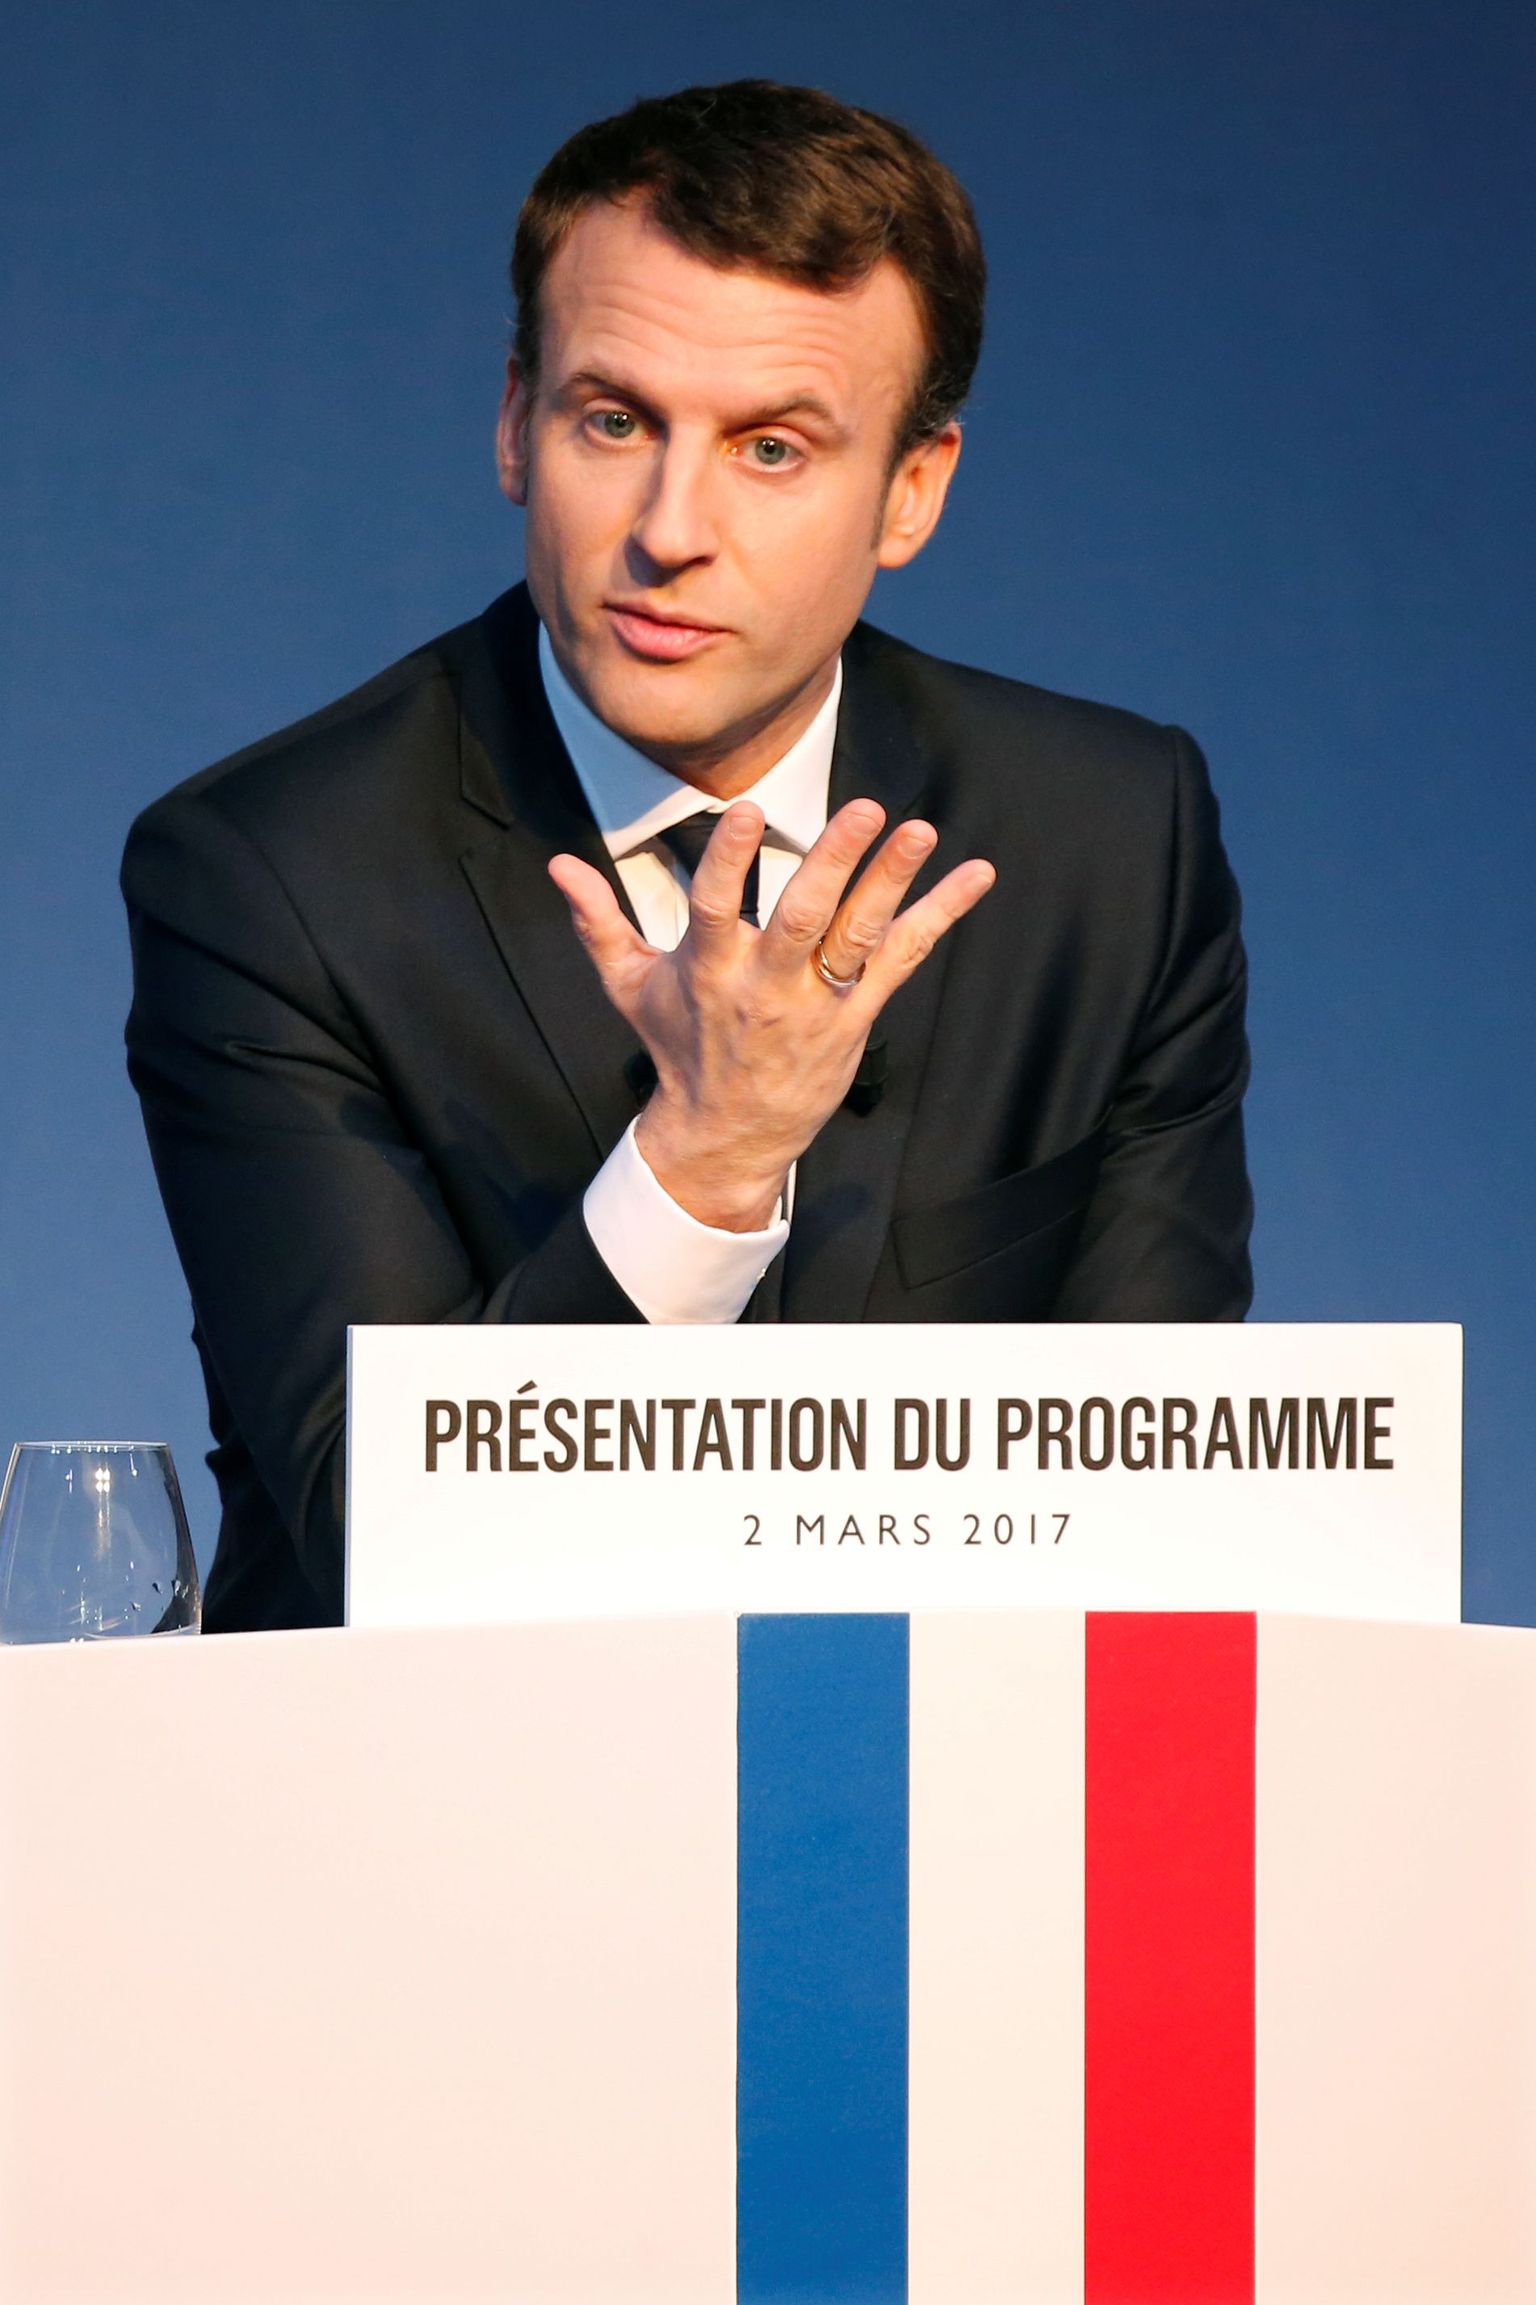 Prantsusmaa 21. sajandisse viia lubanud Emmanuel Macron